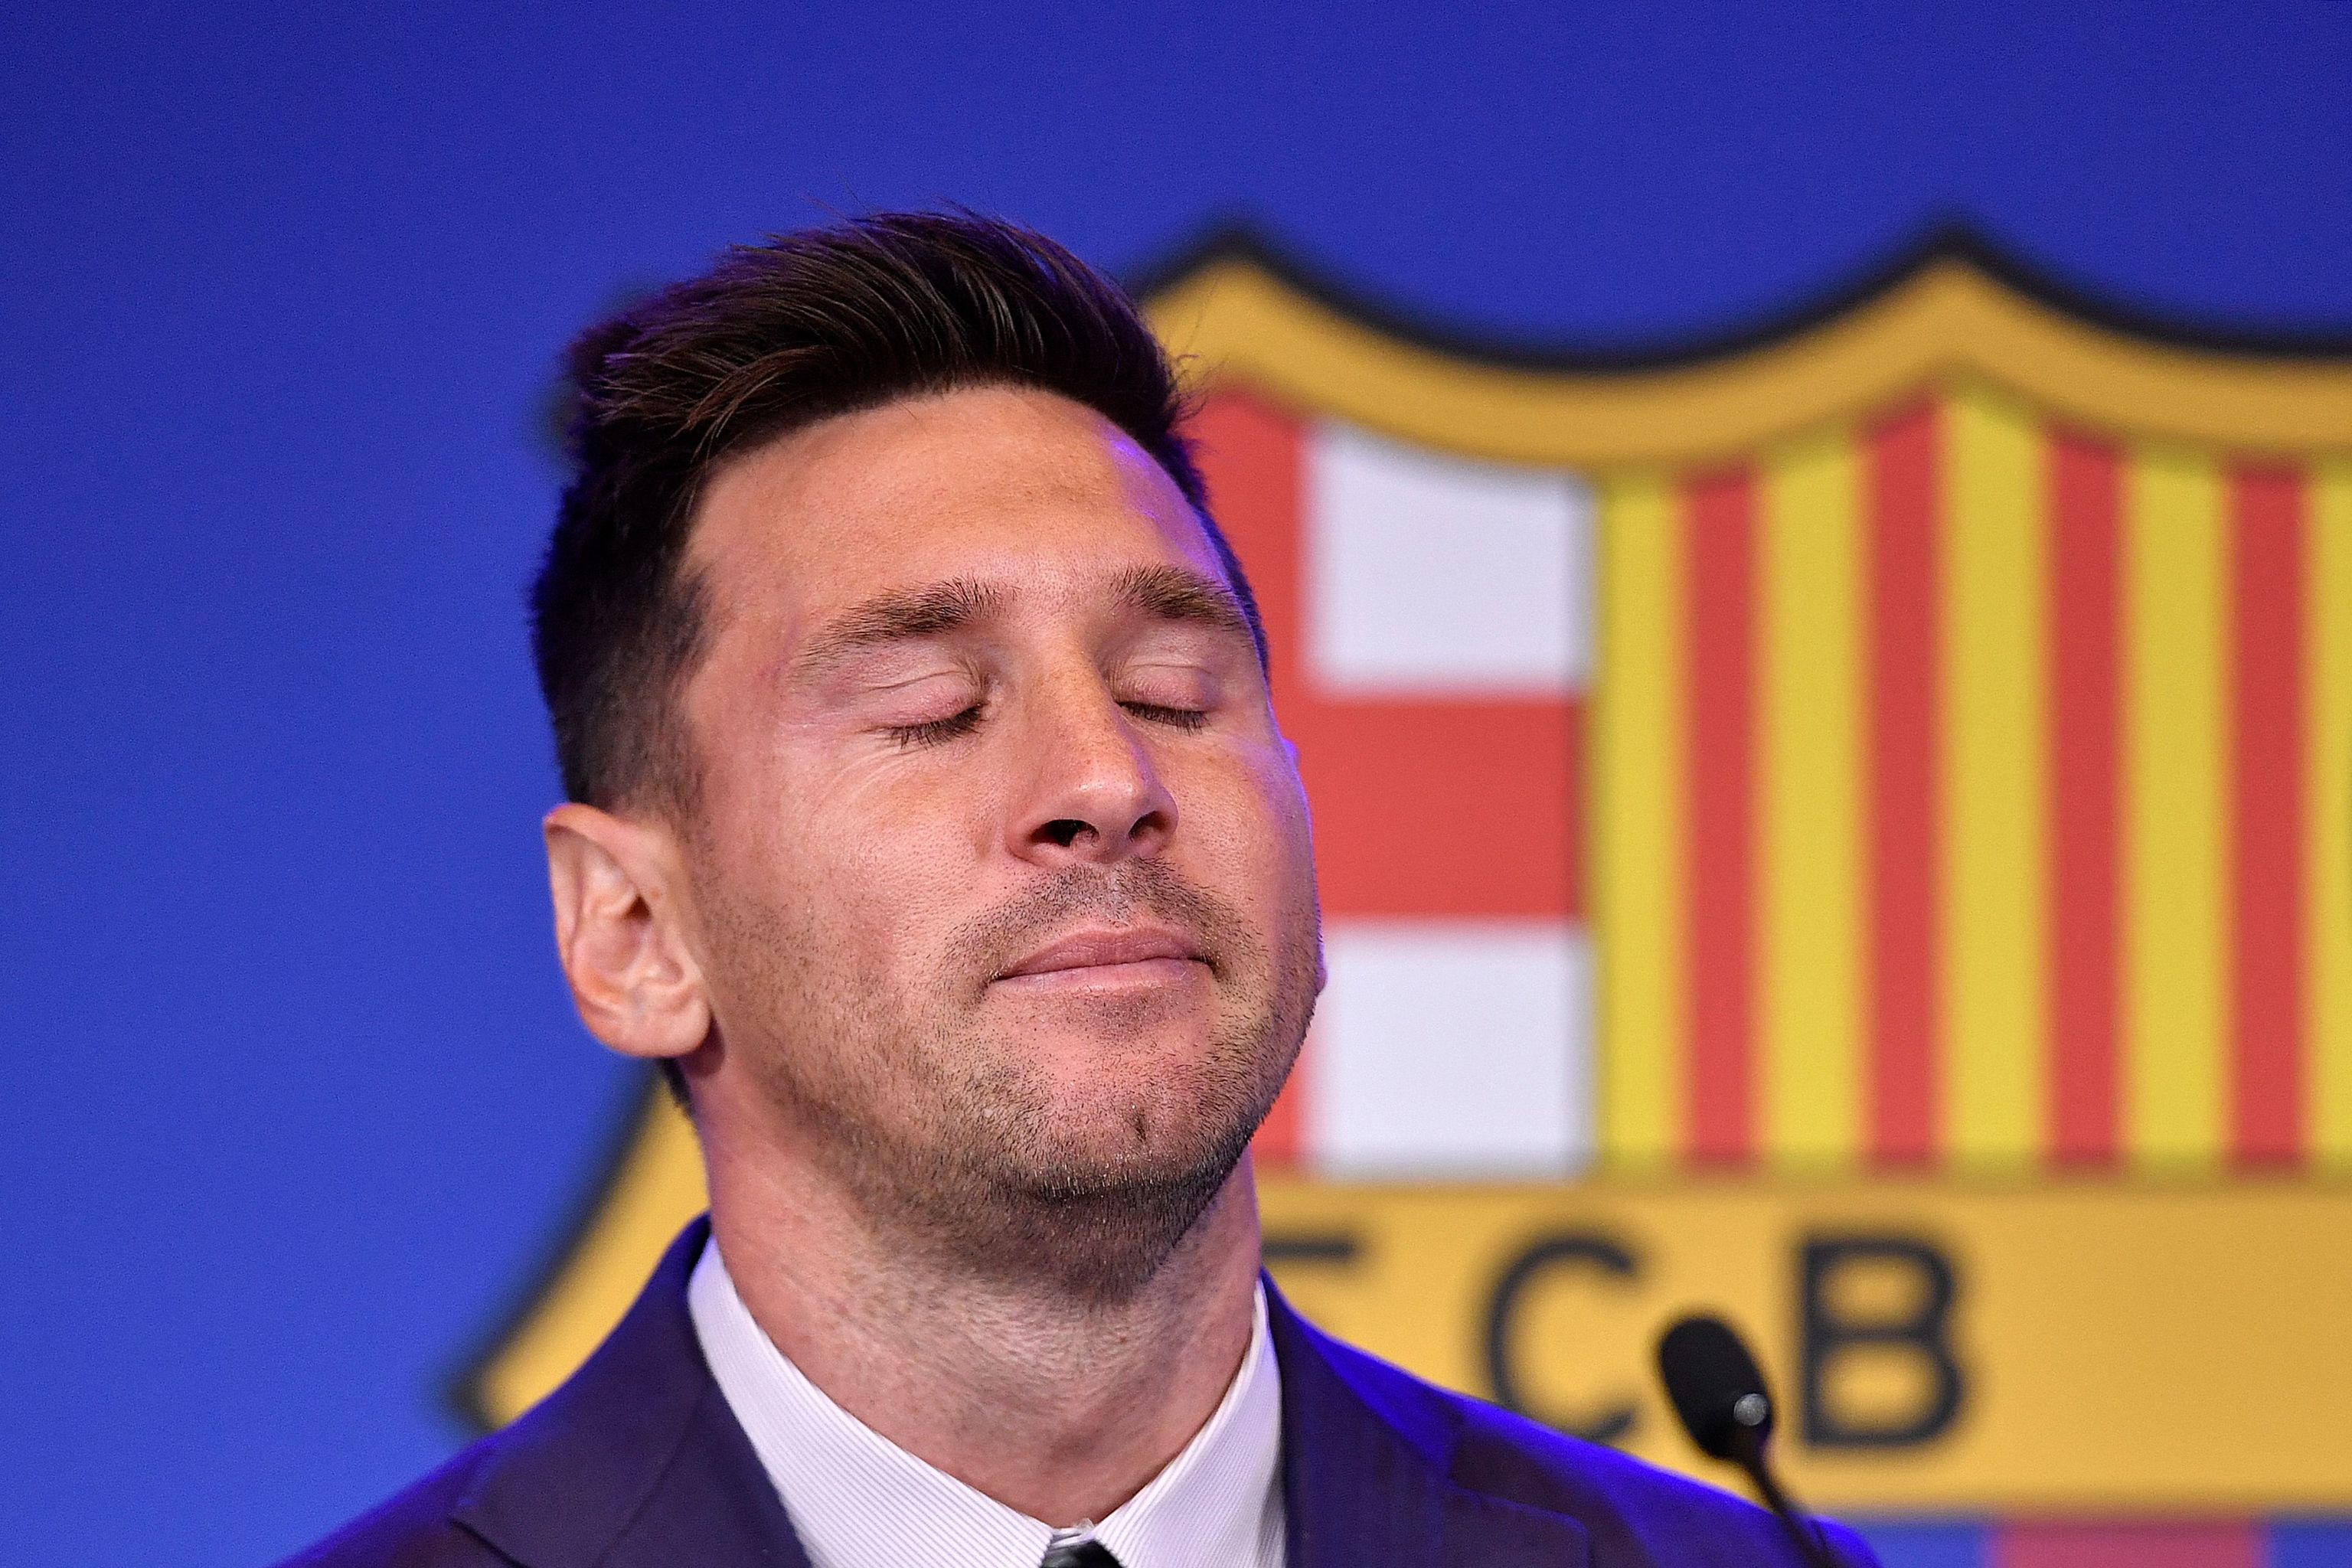 Un final bochornoso para Messi | Fútbol